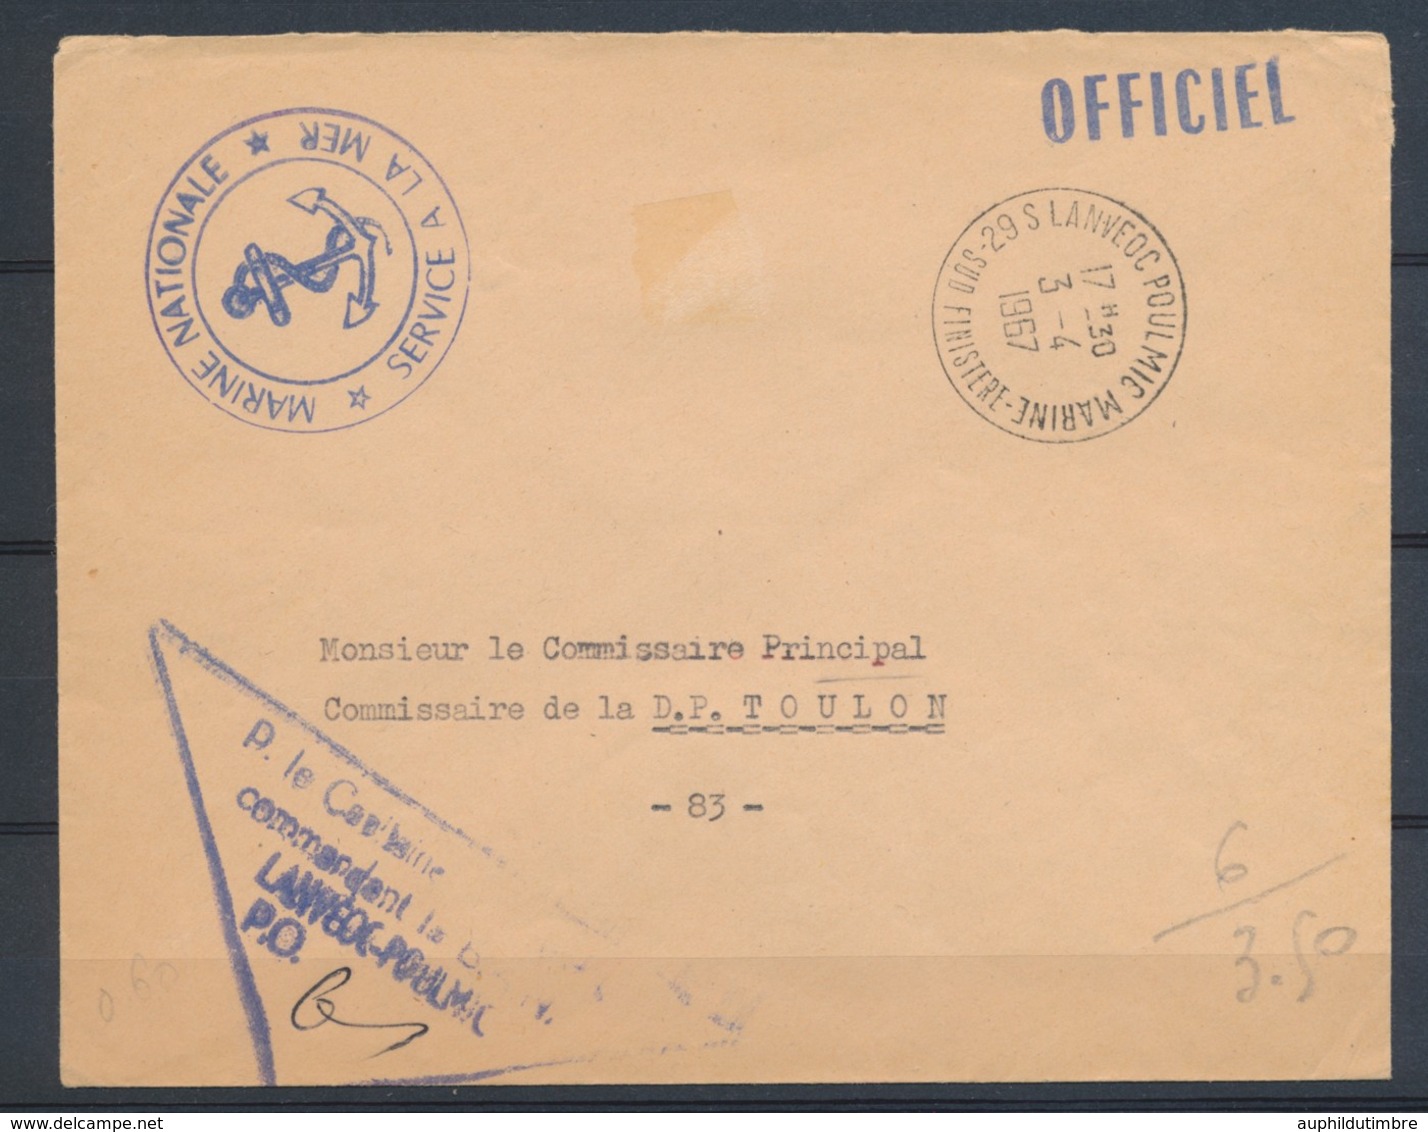 1967 Enveloppe En FM MARINE OFFICIEL 29 S LANVEOC POULMIC Pr Toulon N1822 - Civil Frank Covers